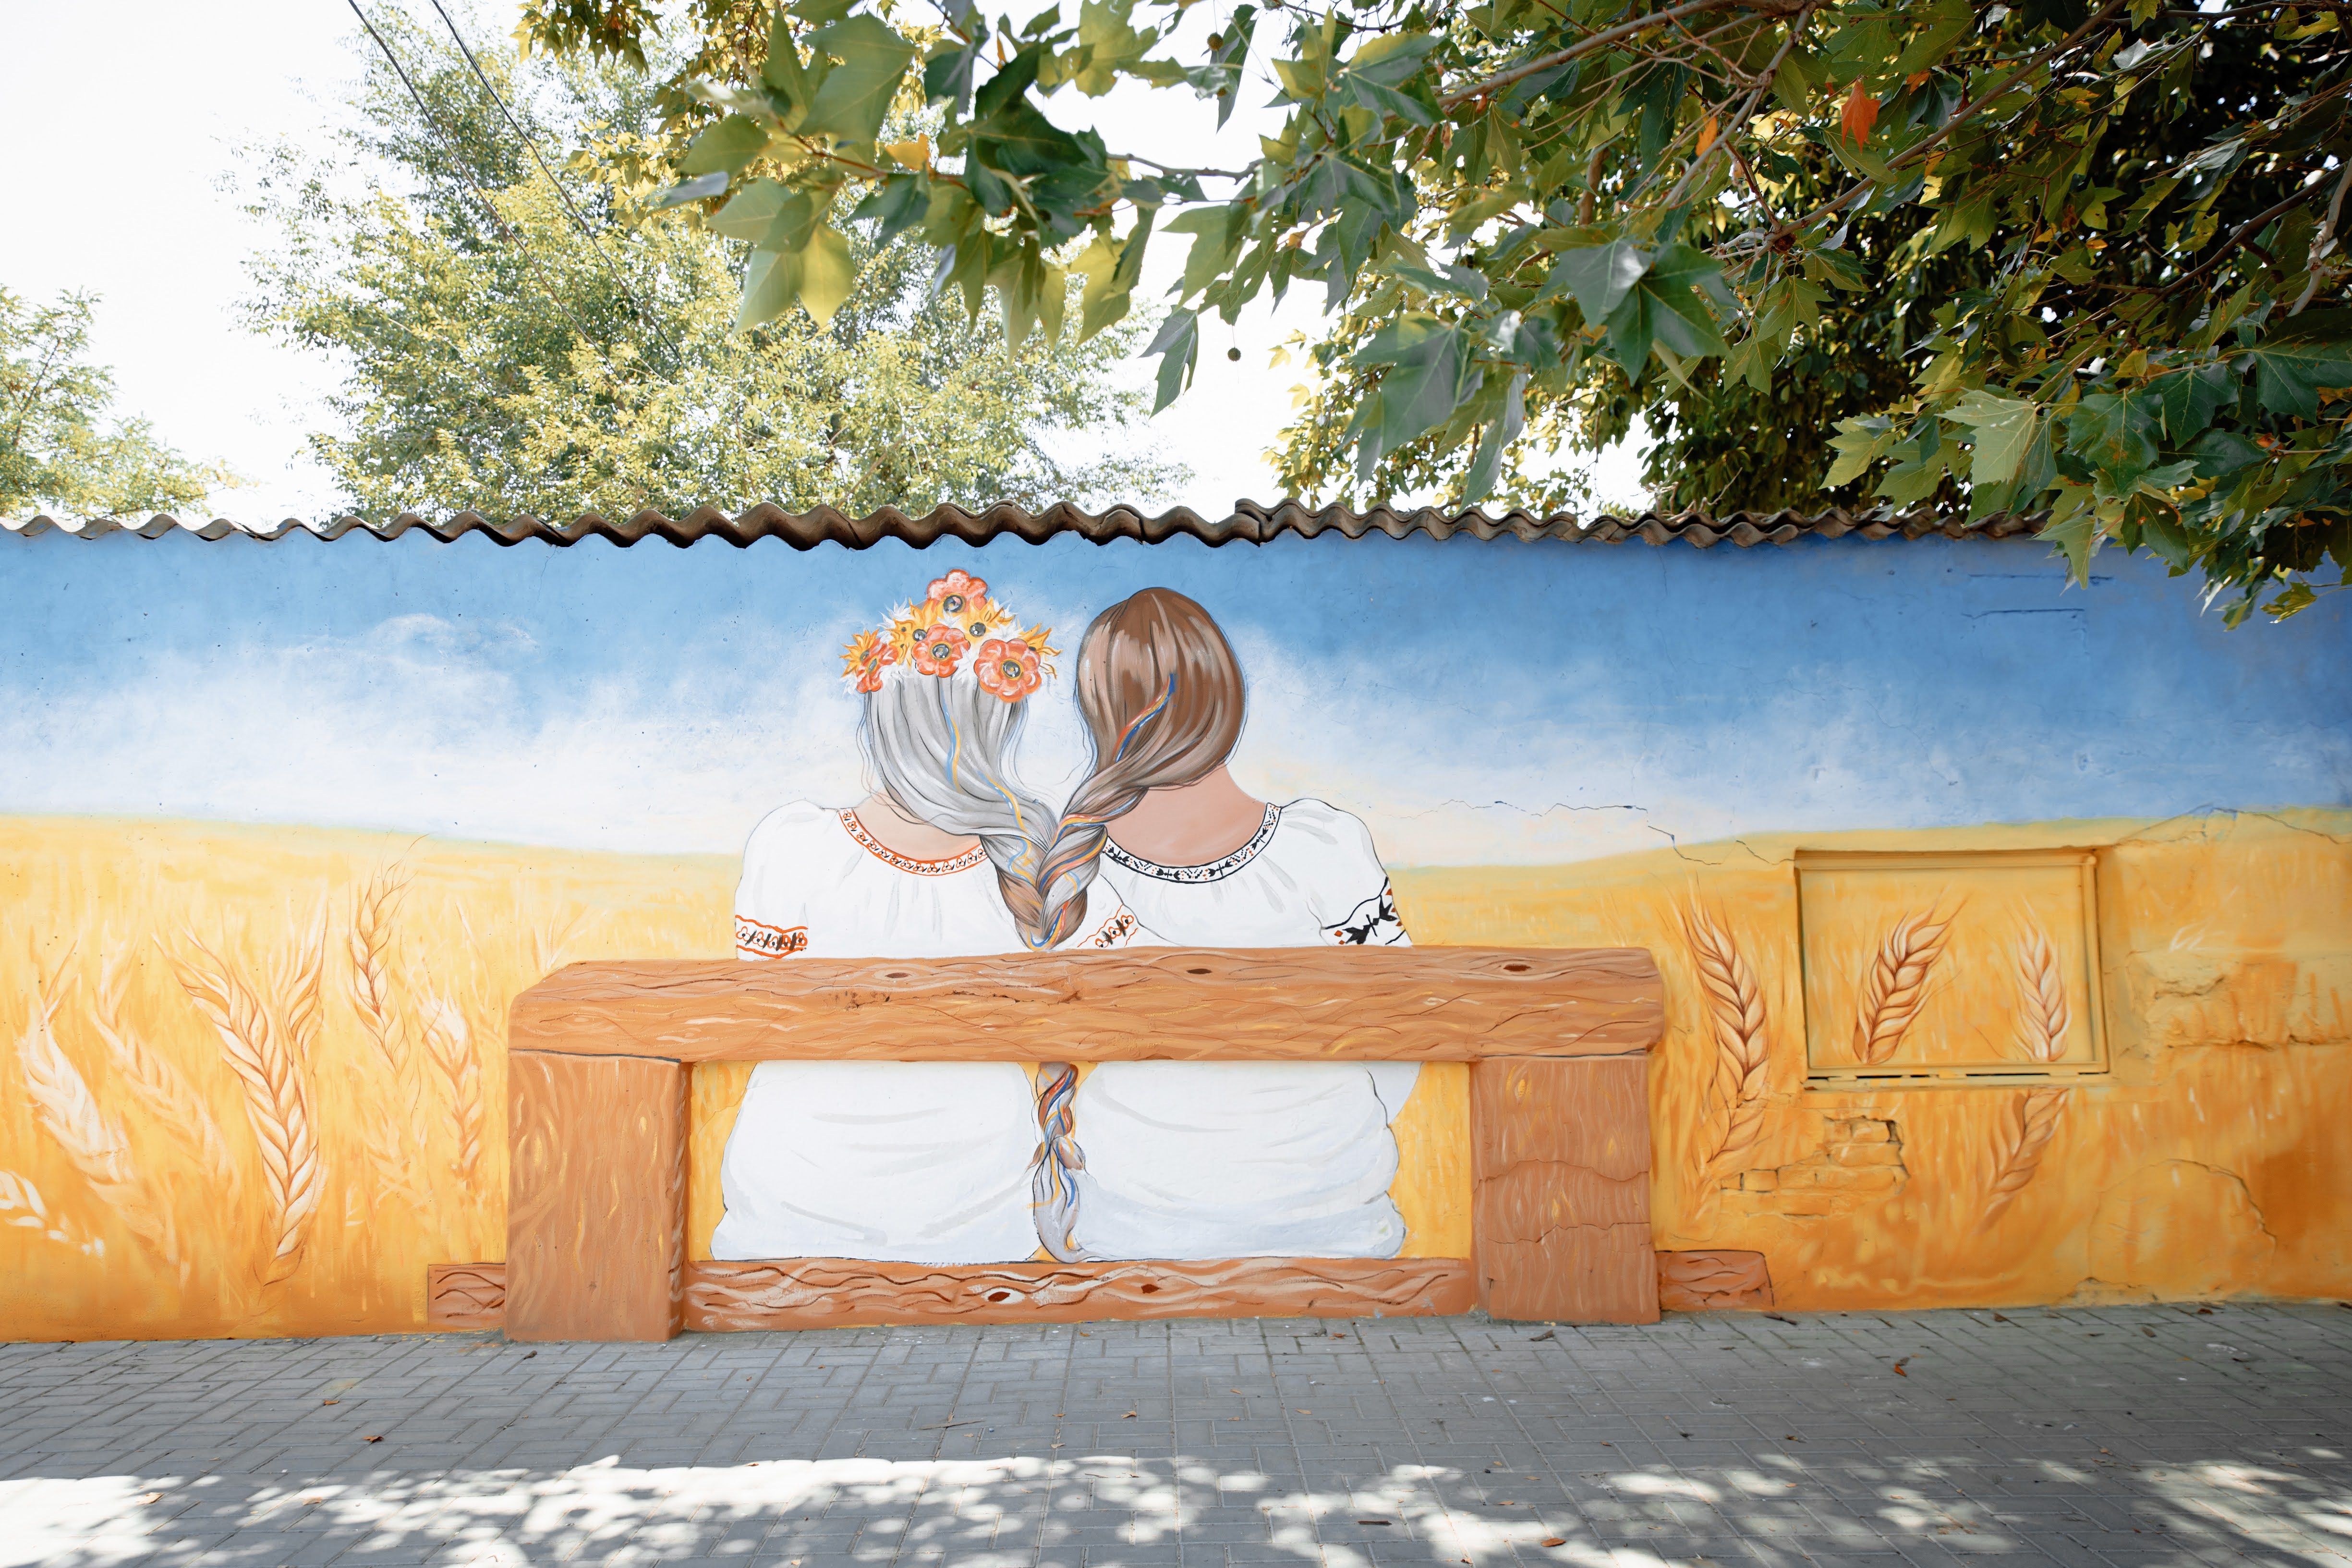 Pictura murală din Cahul „Surori pentru pace” face apel la solidaritate și coeziune socială 